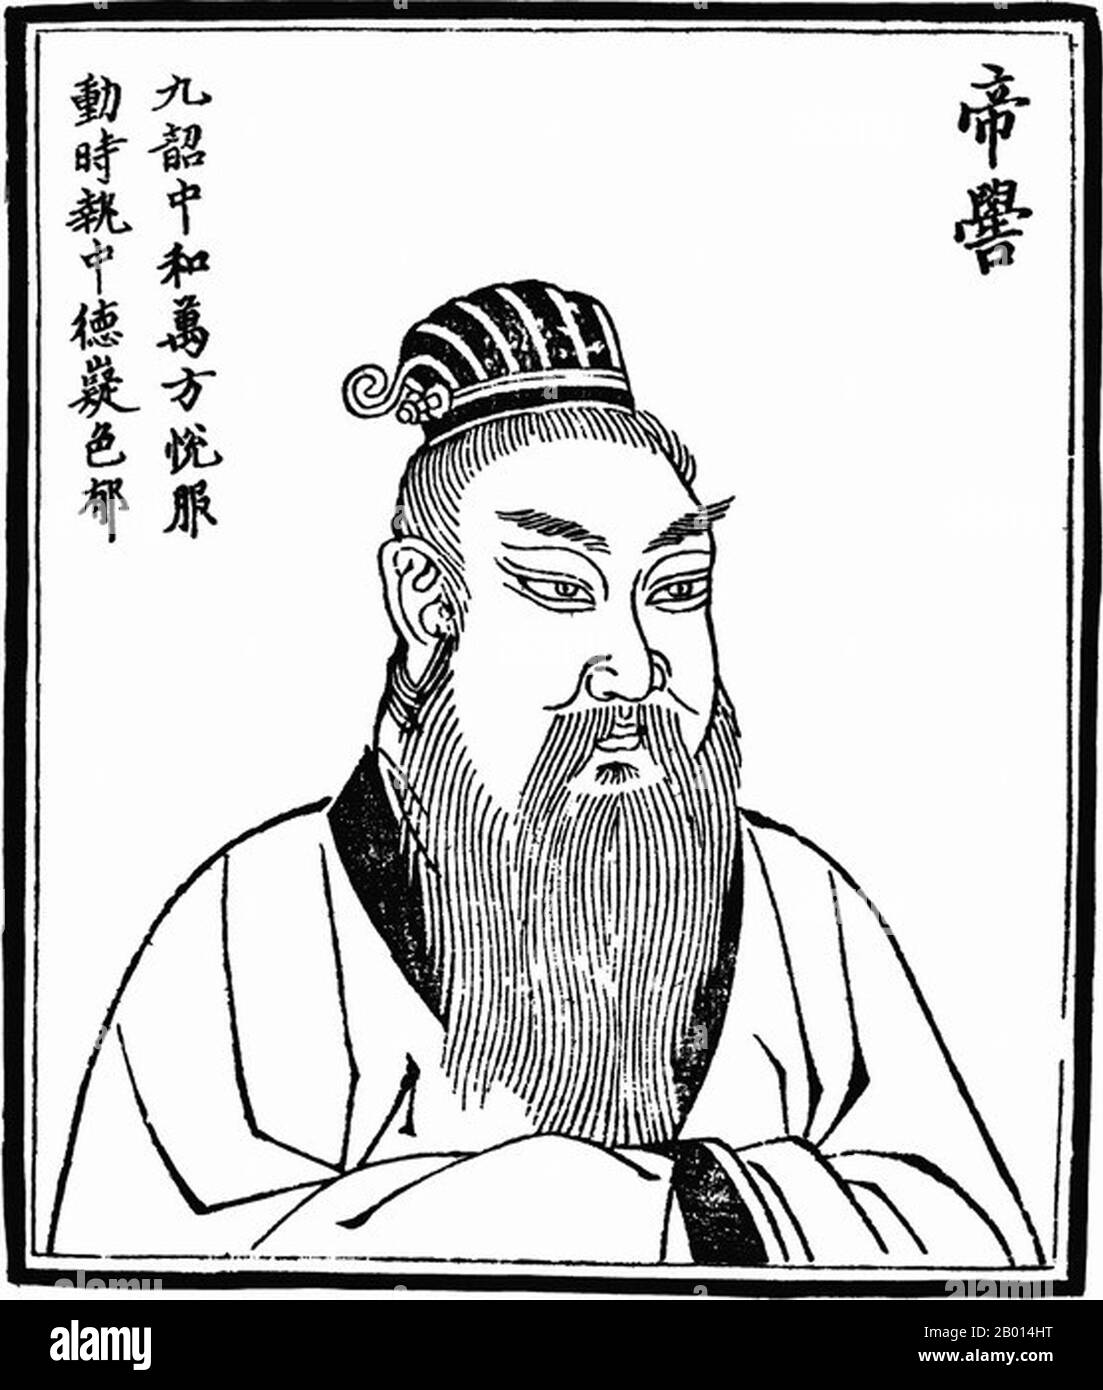 Cina: Imperatore Ku (c.. 2436-2366 a.C.), terzo dei leggendari "cinque imperatori". Illustrazione, c. 1498 l'Imperatore Ku, conosciuto anche come di Ku, Gaoxin o Gaoxin Shi, fu un leggendario governatore e discendente dell'Imperatore giallo. Alcune dinastie successive gli rivendicano legami ancestrali, anche se si discute se è una figura semi-storica o fantastica. Si intitolò "imperatore di Dio" quando salì, e si diceva che viaggiava stagionalmente cavalcando un drago in primavera e in estate, e un cavallo in autunno e in inverno. Si dice inoltre che abbia inventato diversi strumenti musicali e canzoni. Foto Stock